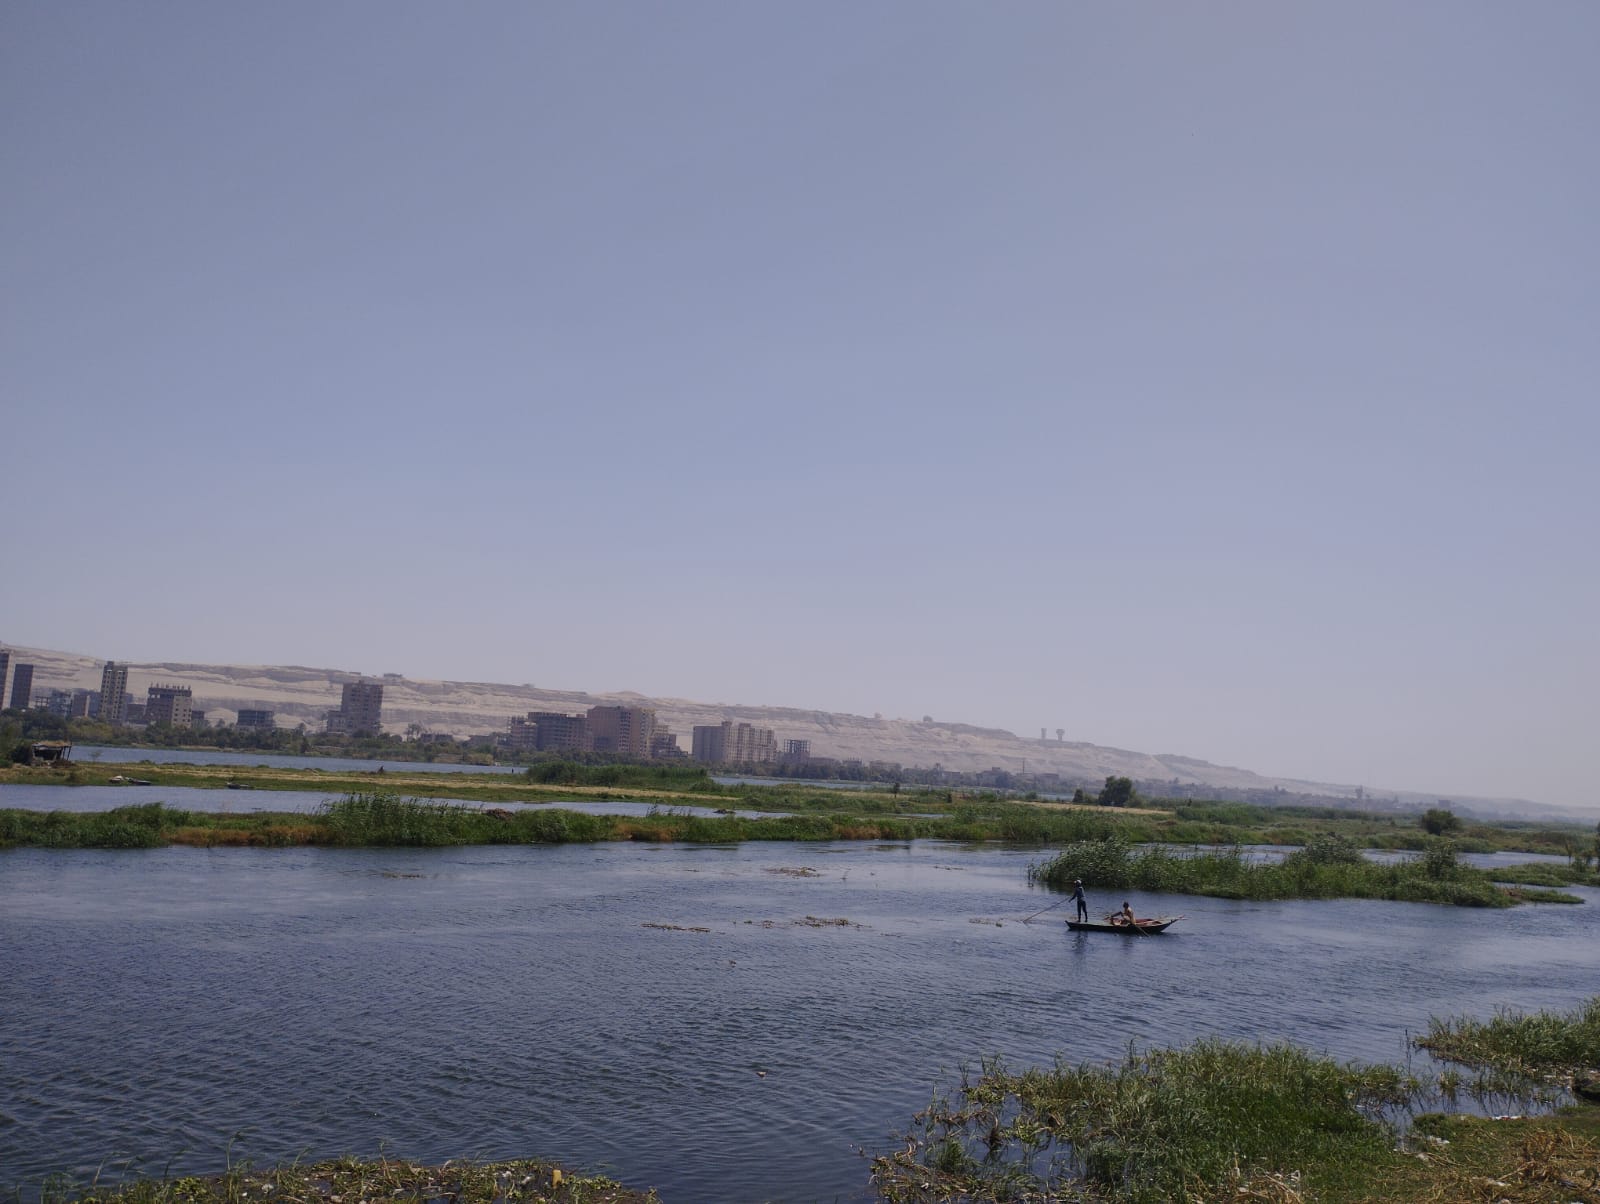  الصيادون ينطلقون بمراكب الصيد فى عرض النيل (2)